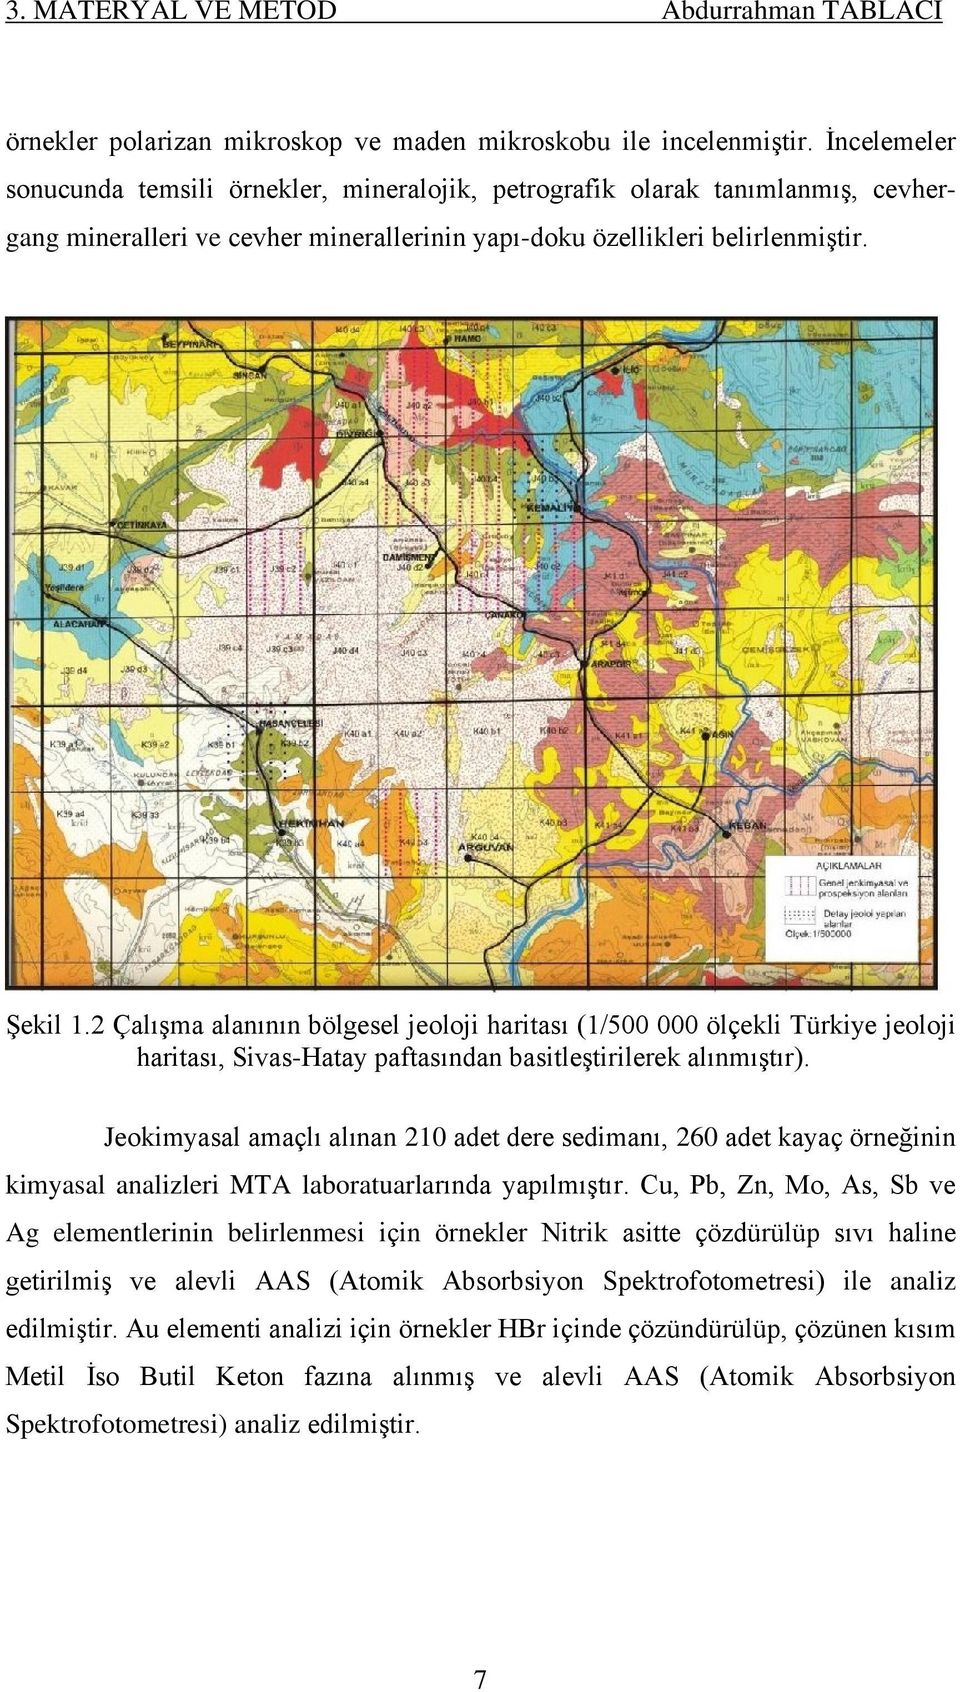 2 Çalışma alanının bölgesel jeoloji haritası (1/500 000 ölçekli Türkiye jeoloji haritası, Sivas-Hatay paftasından basitleştirilerek alınmıştır).